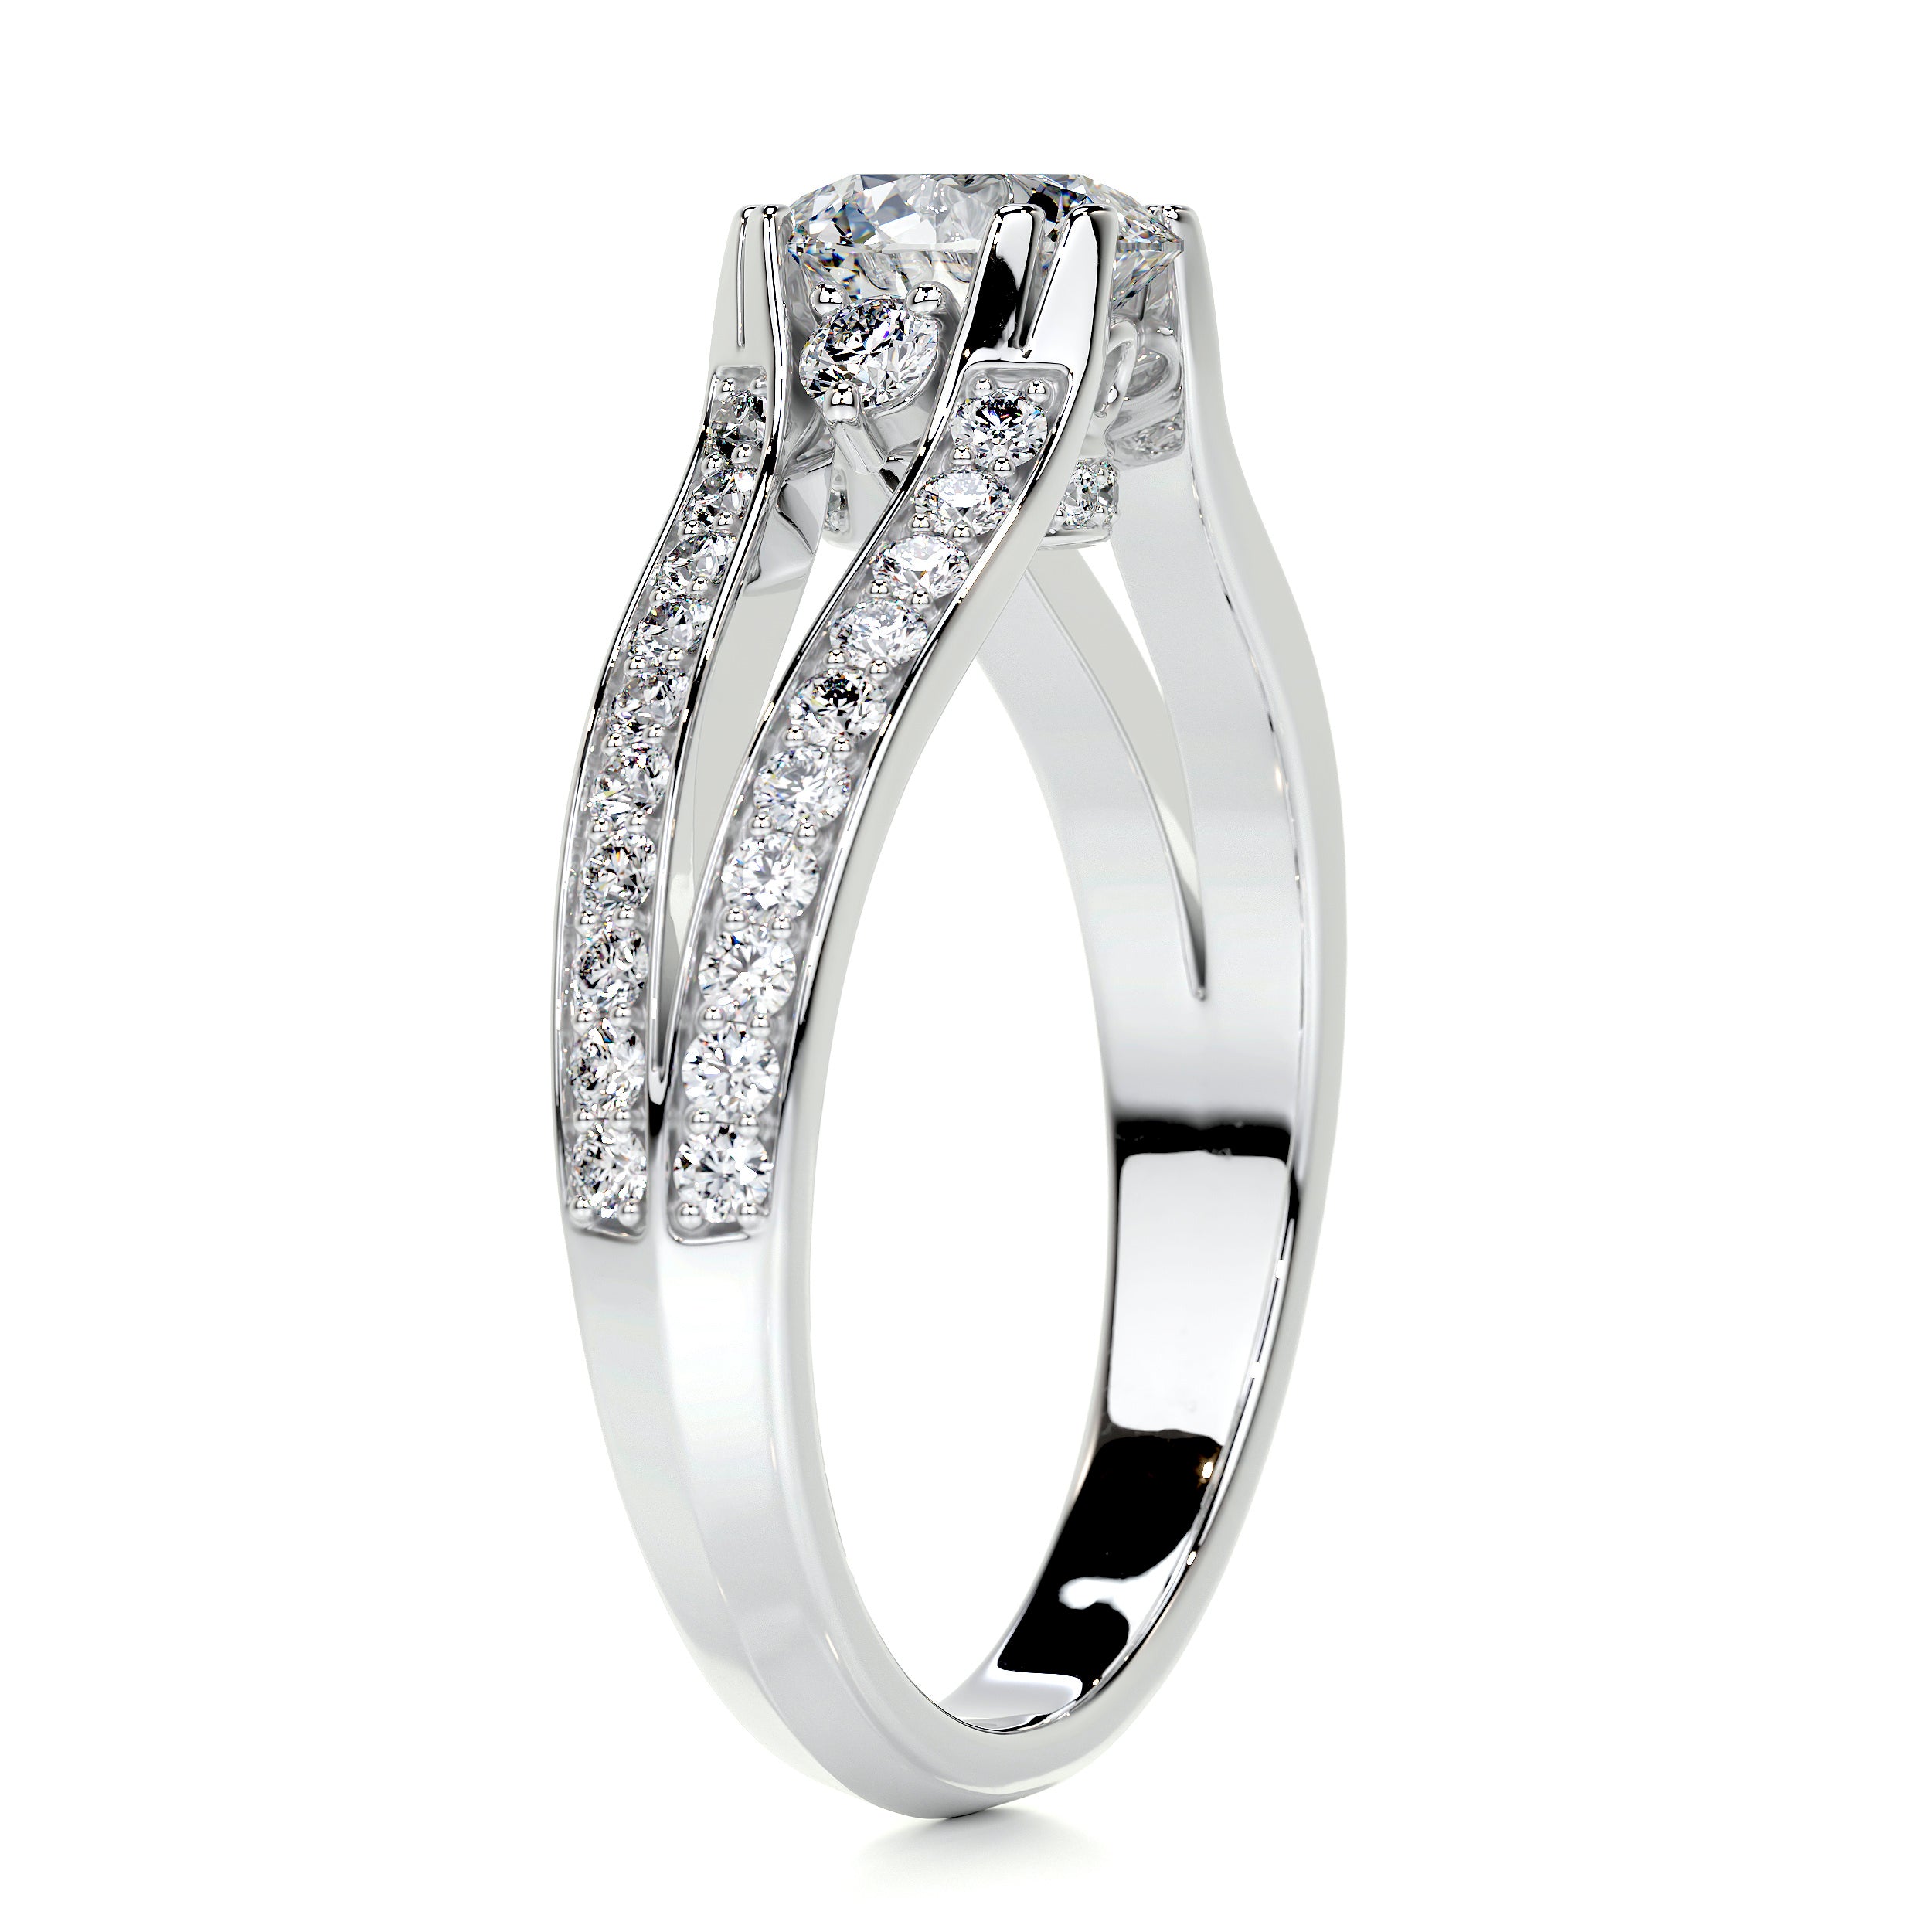 Alex Diamond Engagement Ring   (1.5 Carat) -Platinum